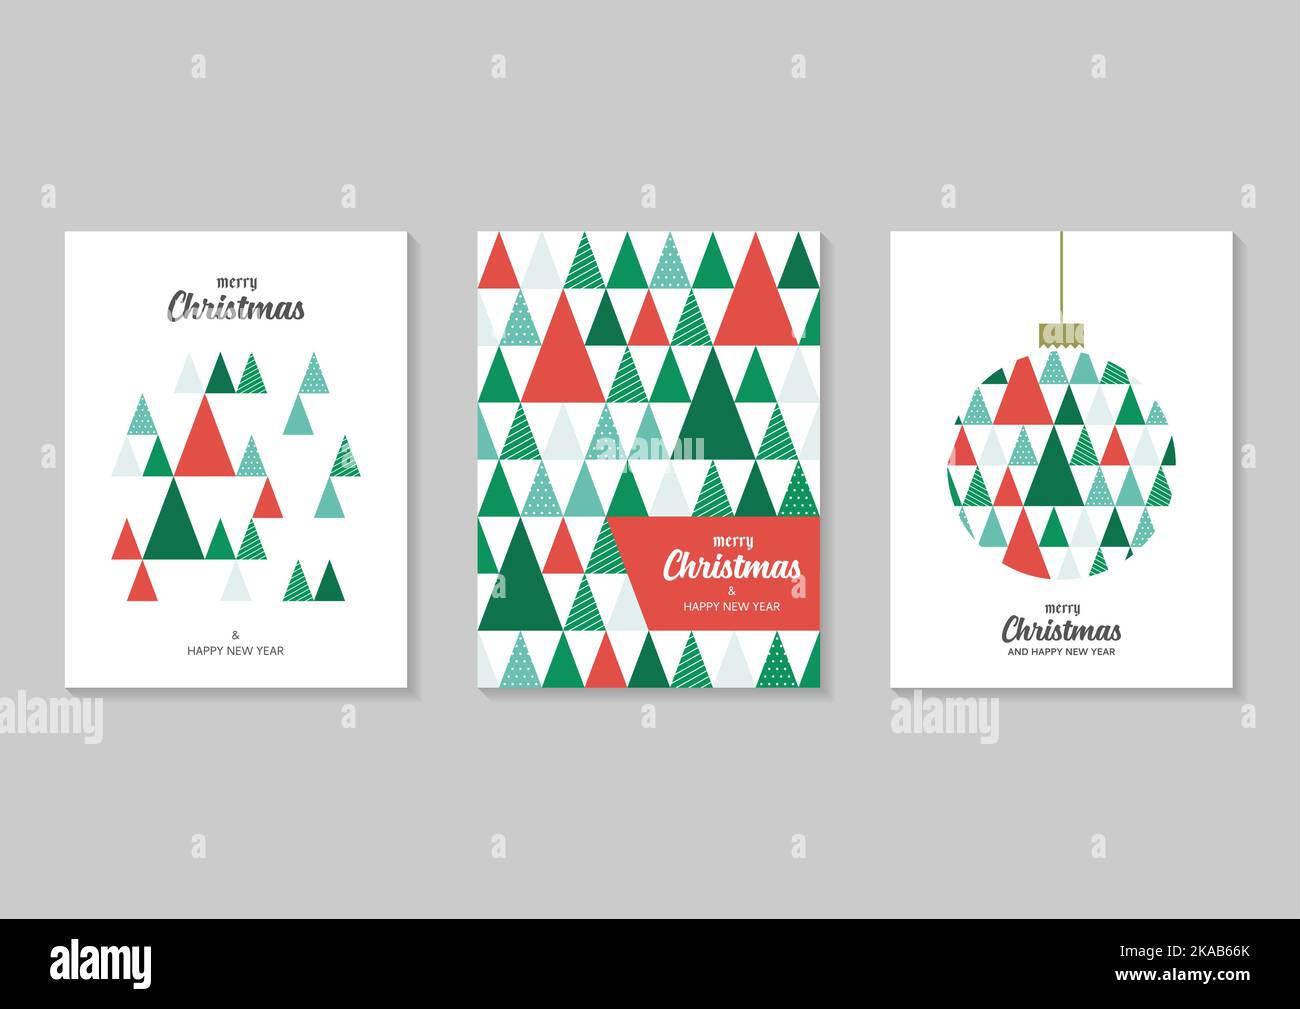 Weihnachts-Geschenkkarten Kollektion. Frohe Weihnachten Grußkarte Set. Vektorgrafik Stock Vektor